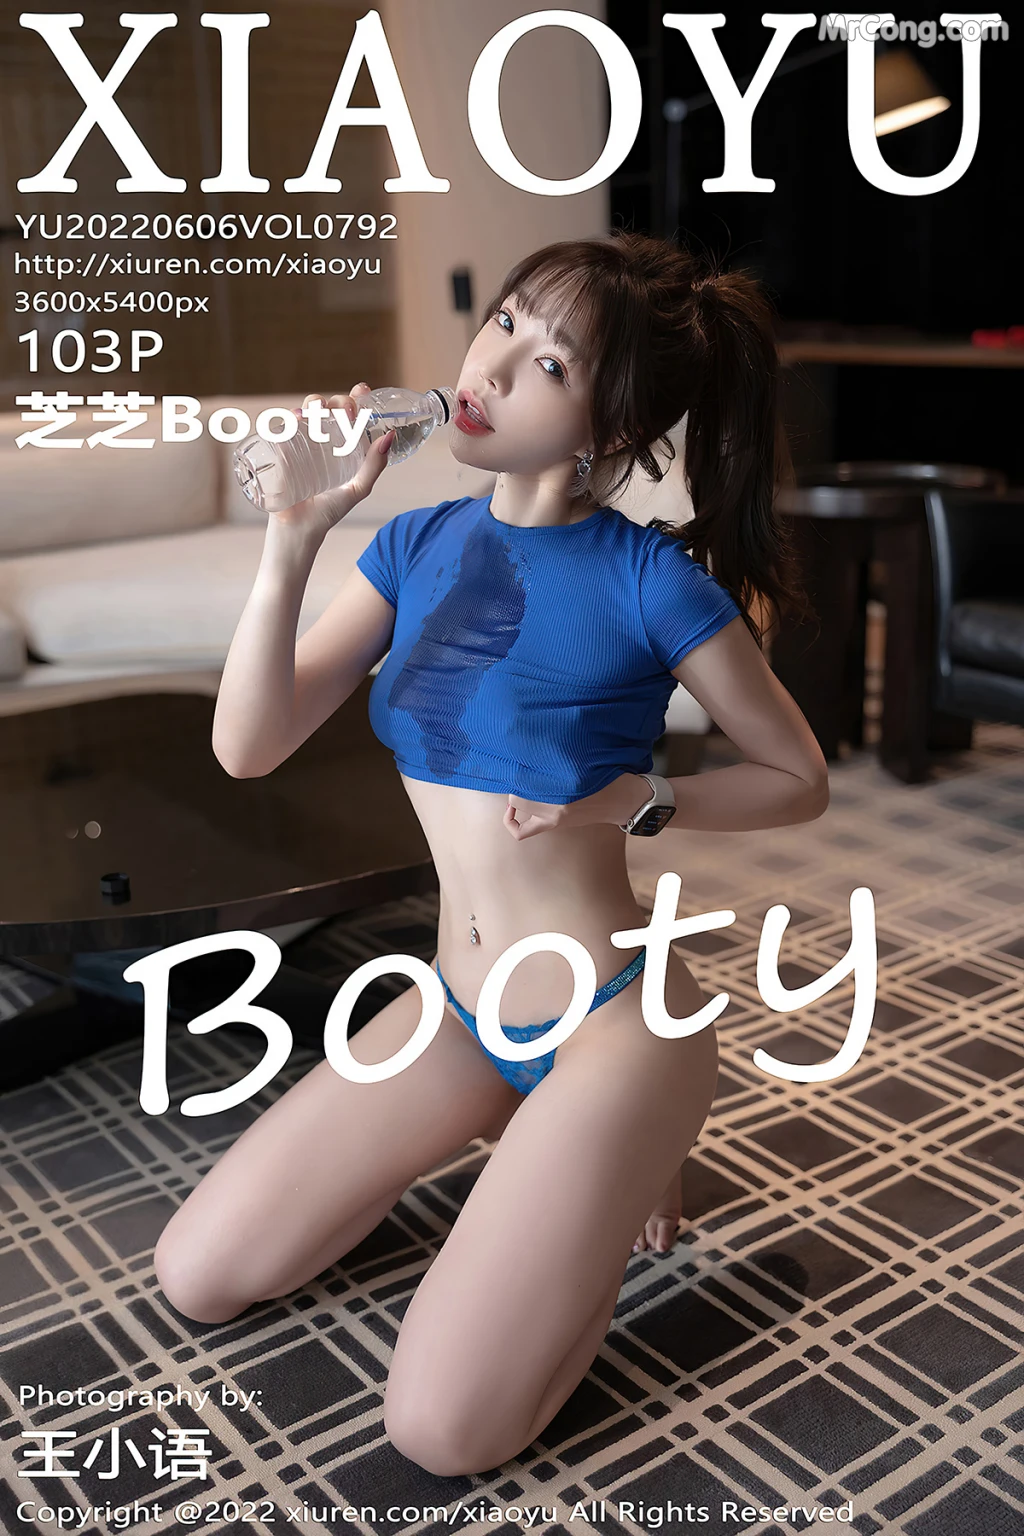 XiaoYu Vol.792: Booty (芝芝) (104 photos) photo 6-3